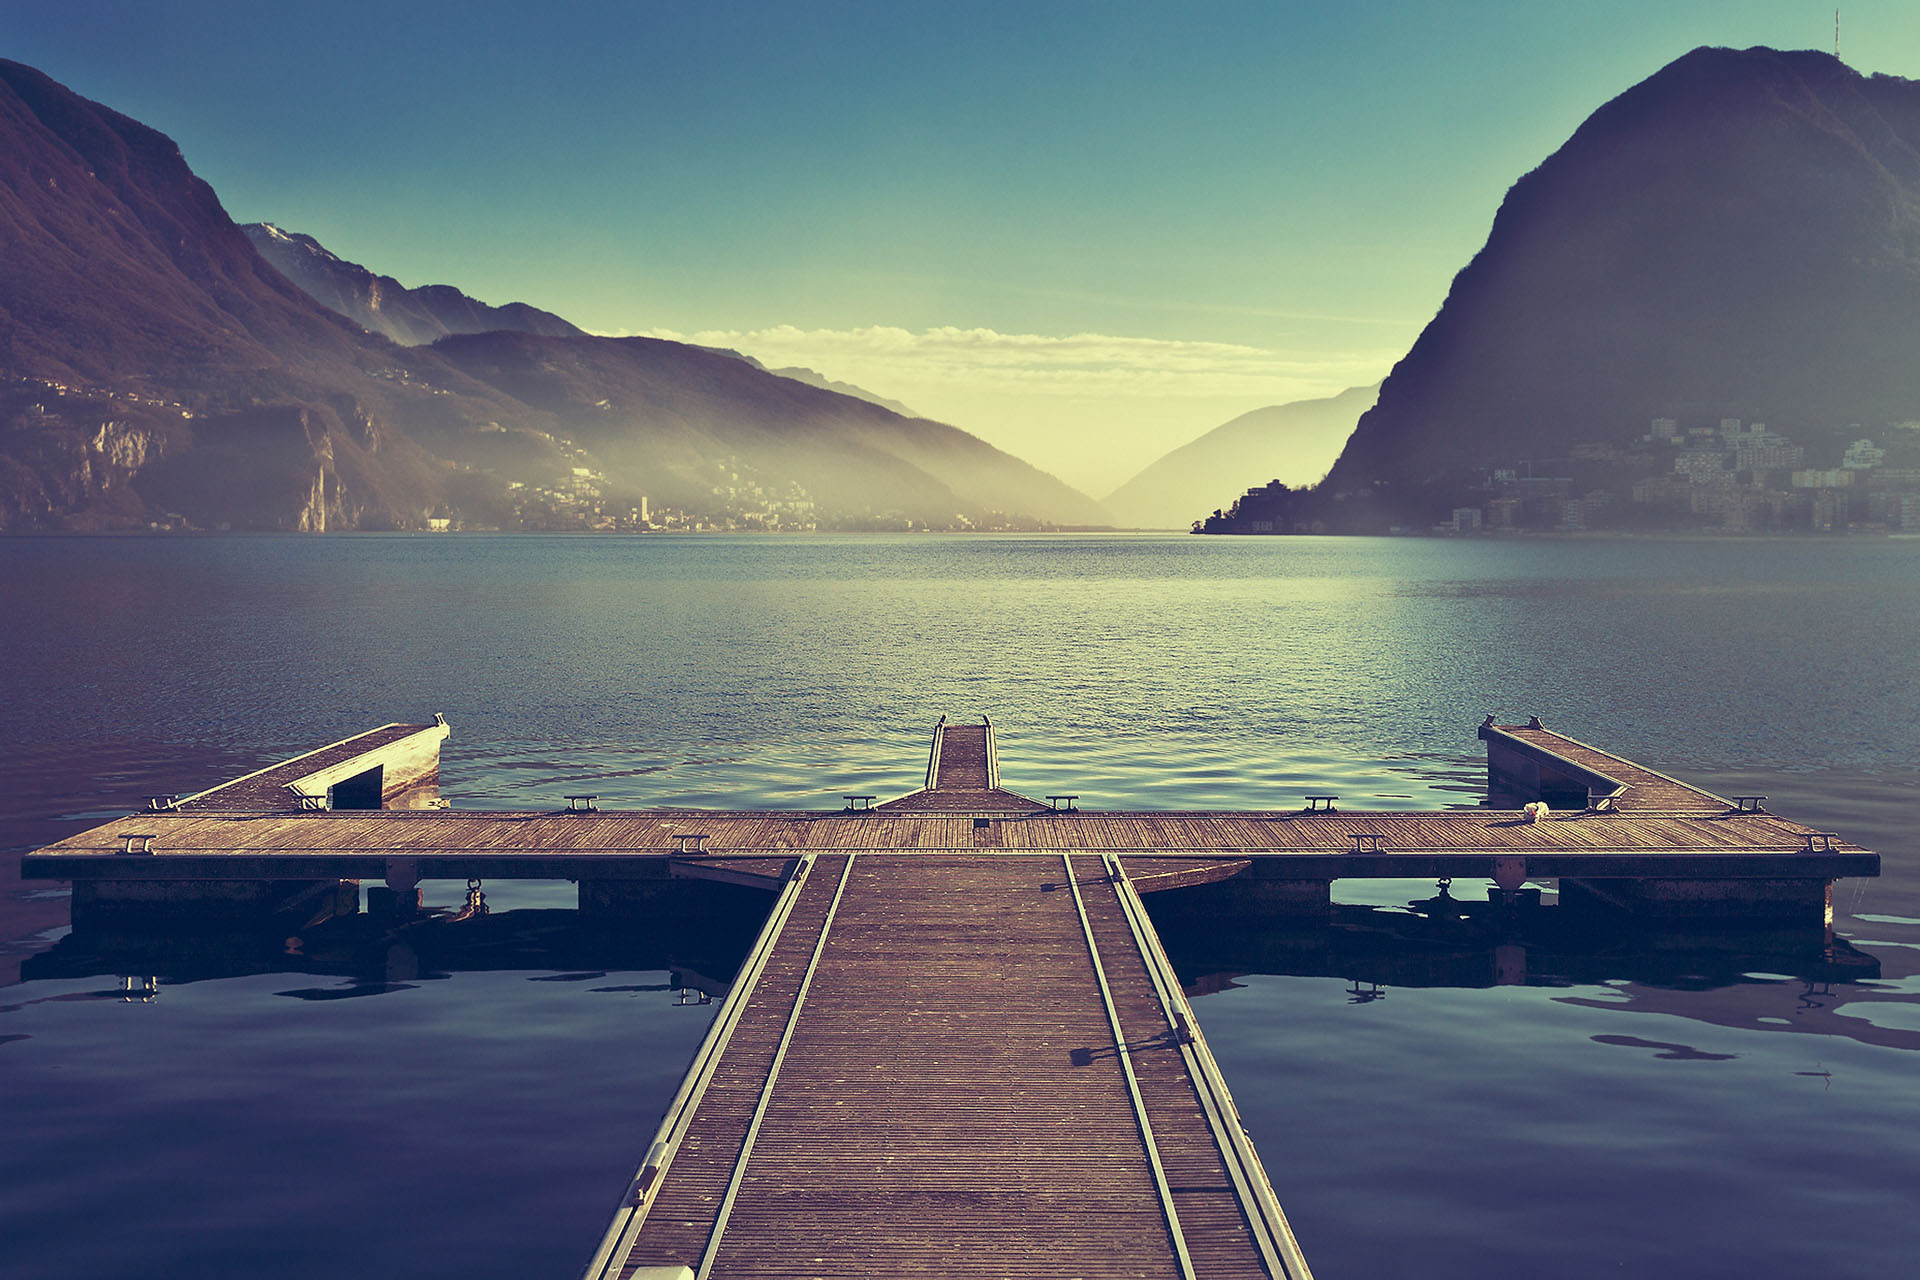 Pont donnant sur lac, image à tons bleus, relaxante